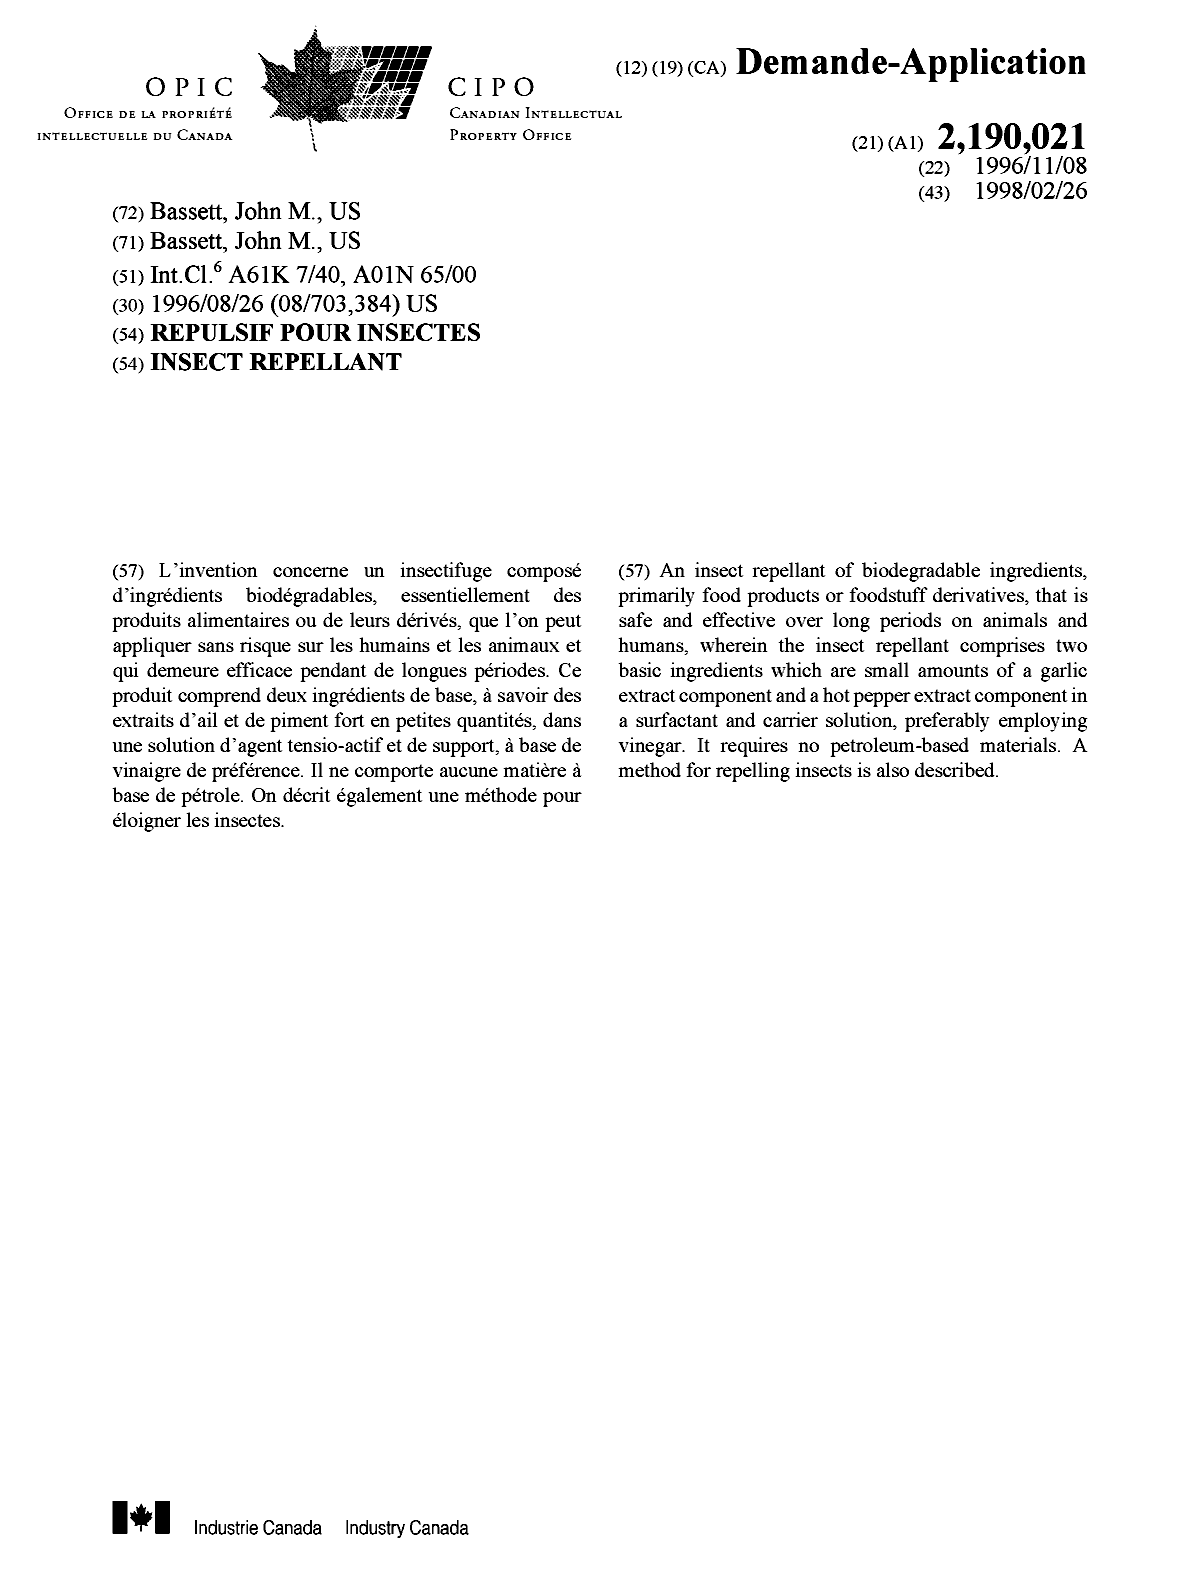 Document de brevet canadien 2190021. Page couverture 20001208. Image 1 de 1